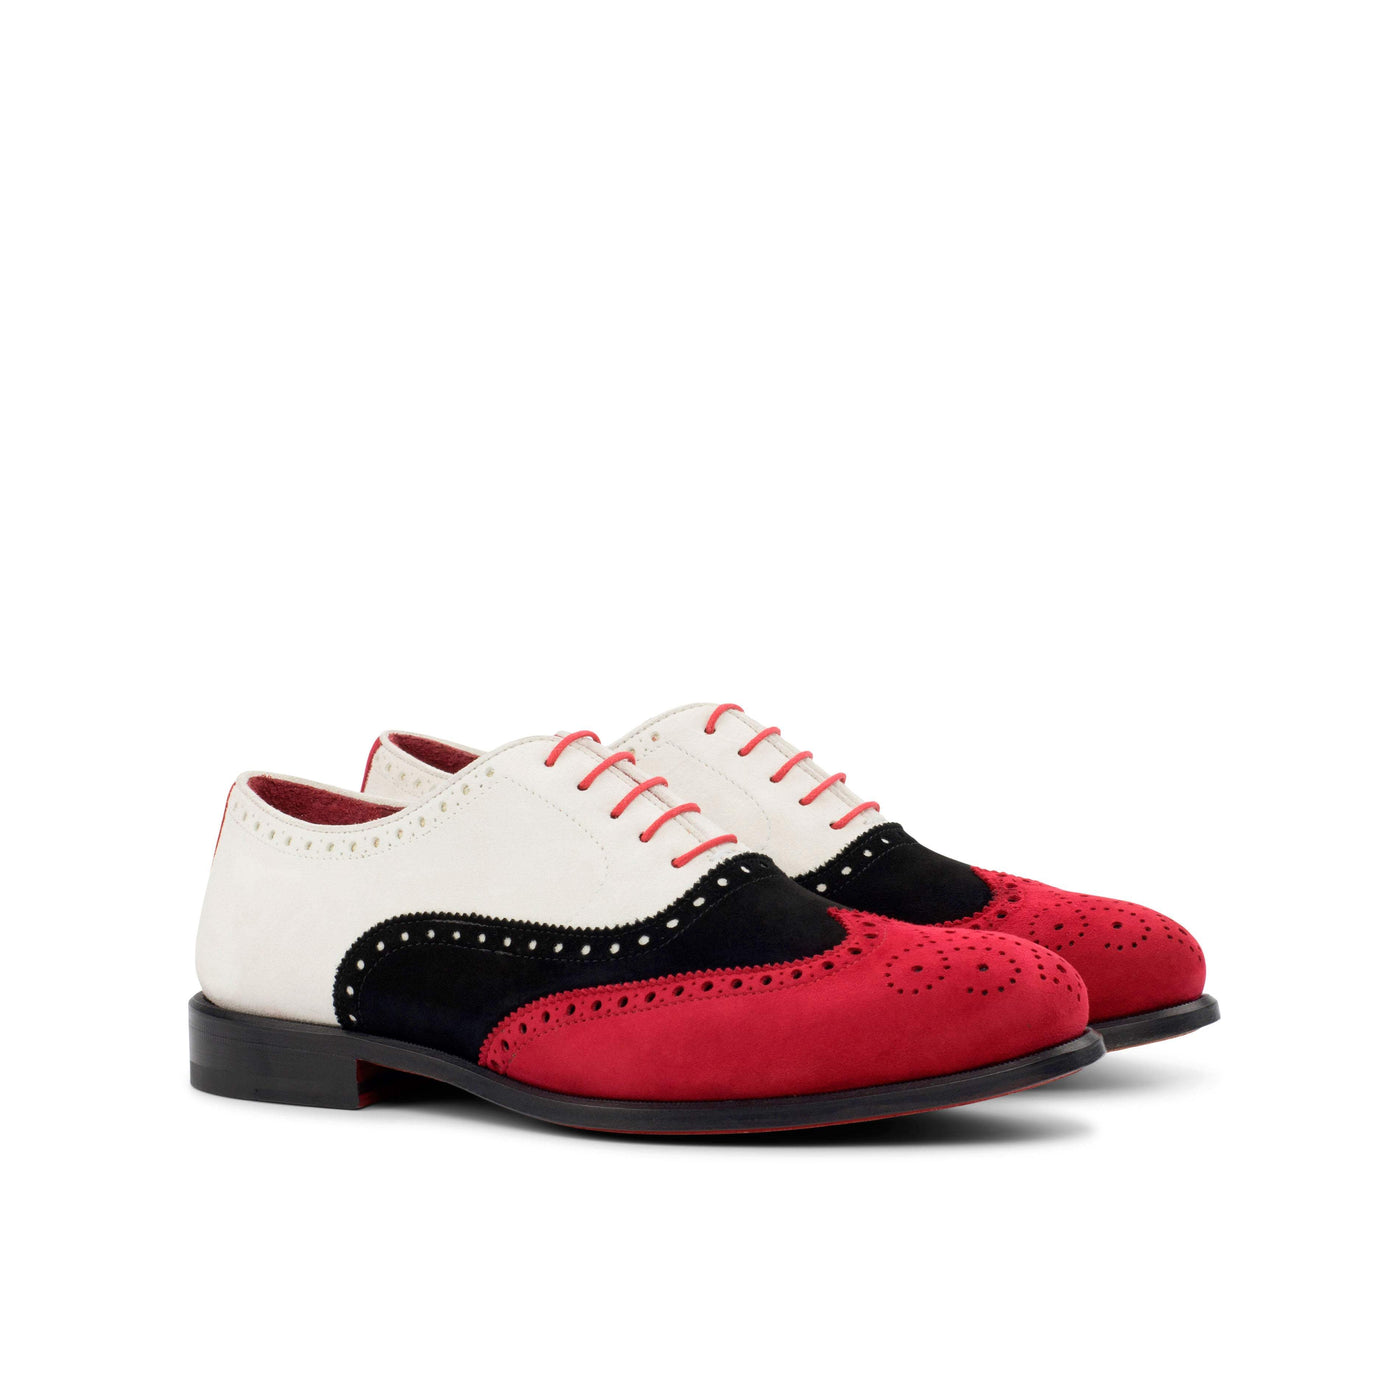 Men's Full Brogue Shoes Leather Red Black 4436 3- MERRIMIUM